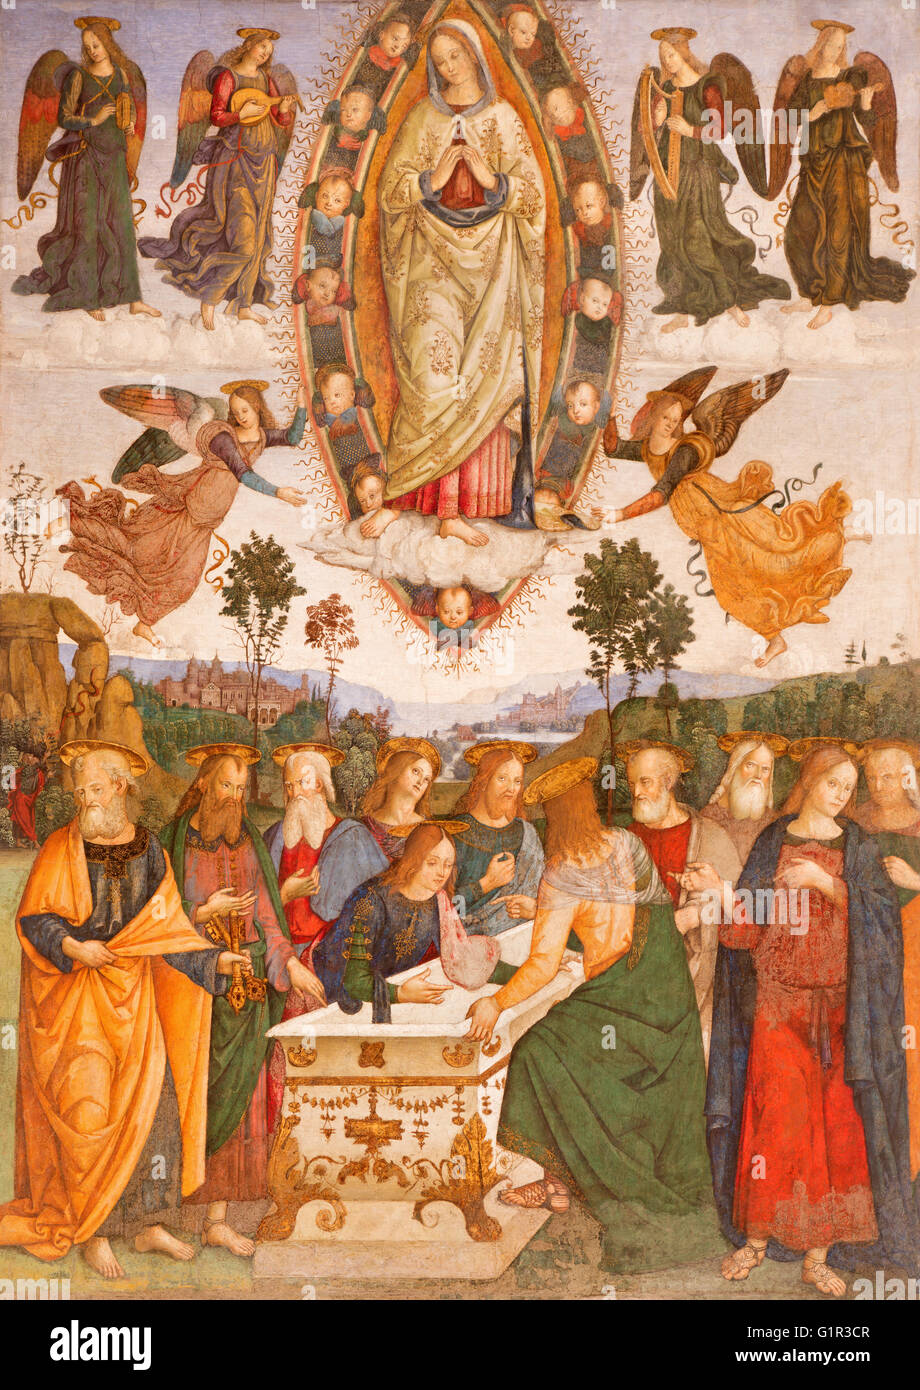 ROME, ITALIE - Le 9 mars 2016 : la fresque de l'hypothèse de la Vierge Marie par l'aide de Aiuto del Pinturicchio (1489 - 1491) Banque D'Images